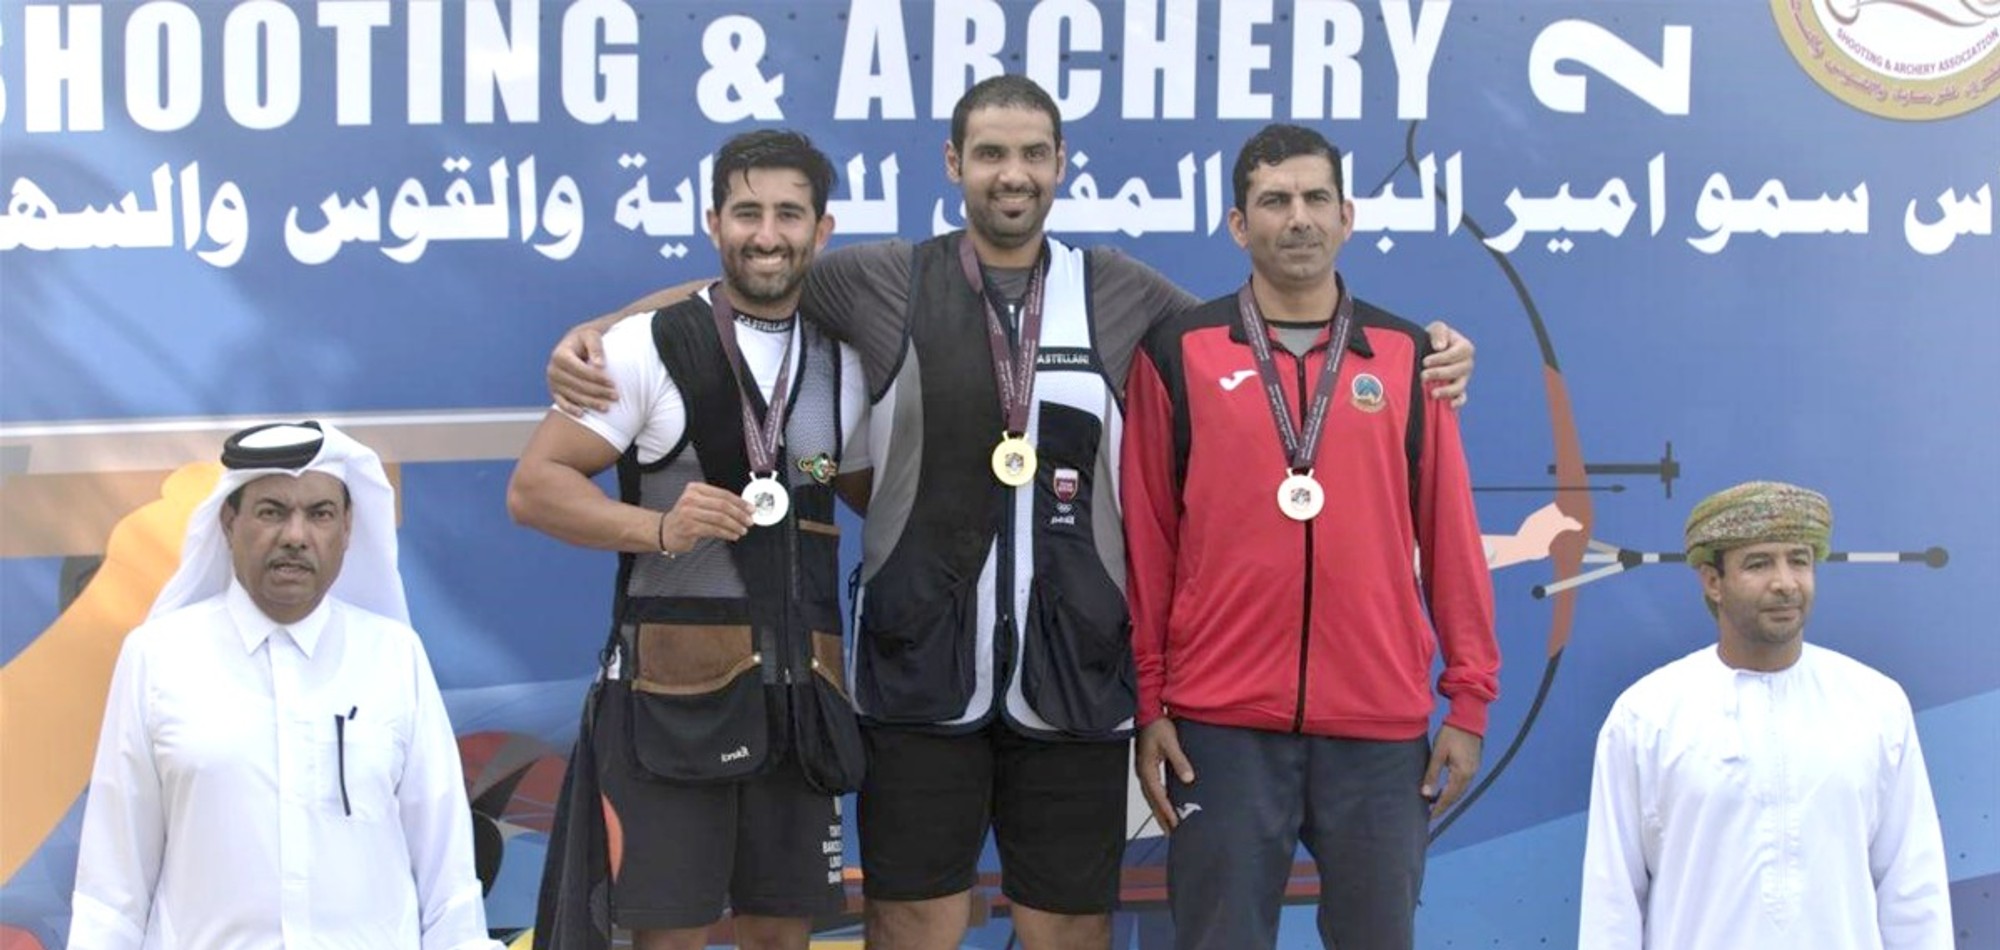 Amir Cup: Al Rumaihi wins trap gold